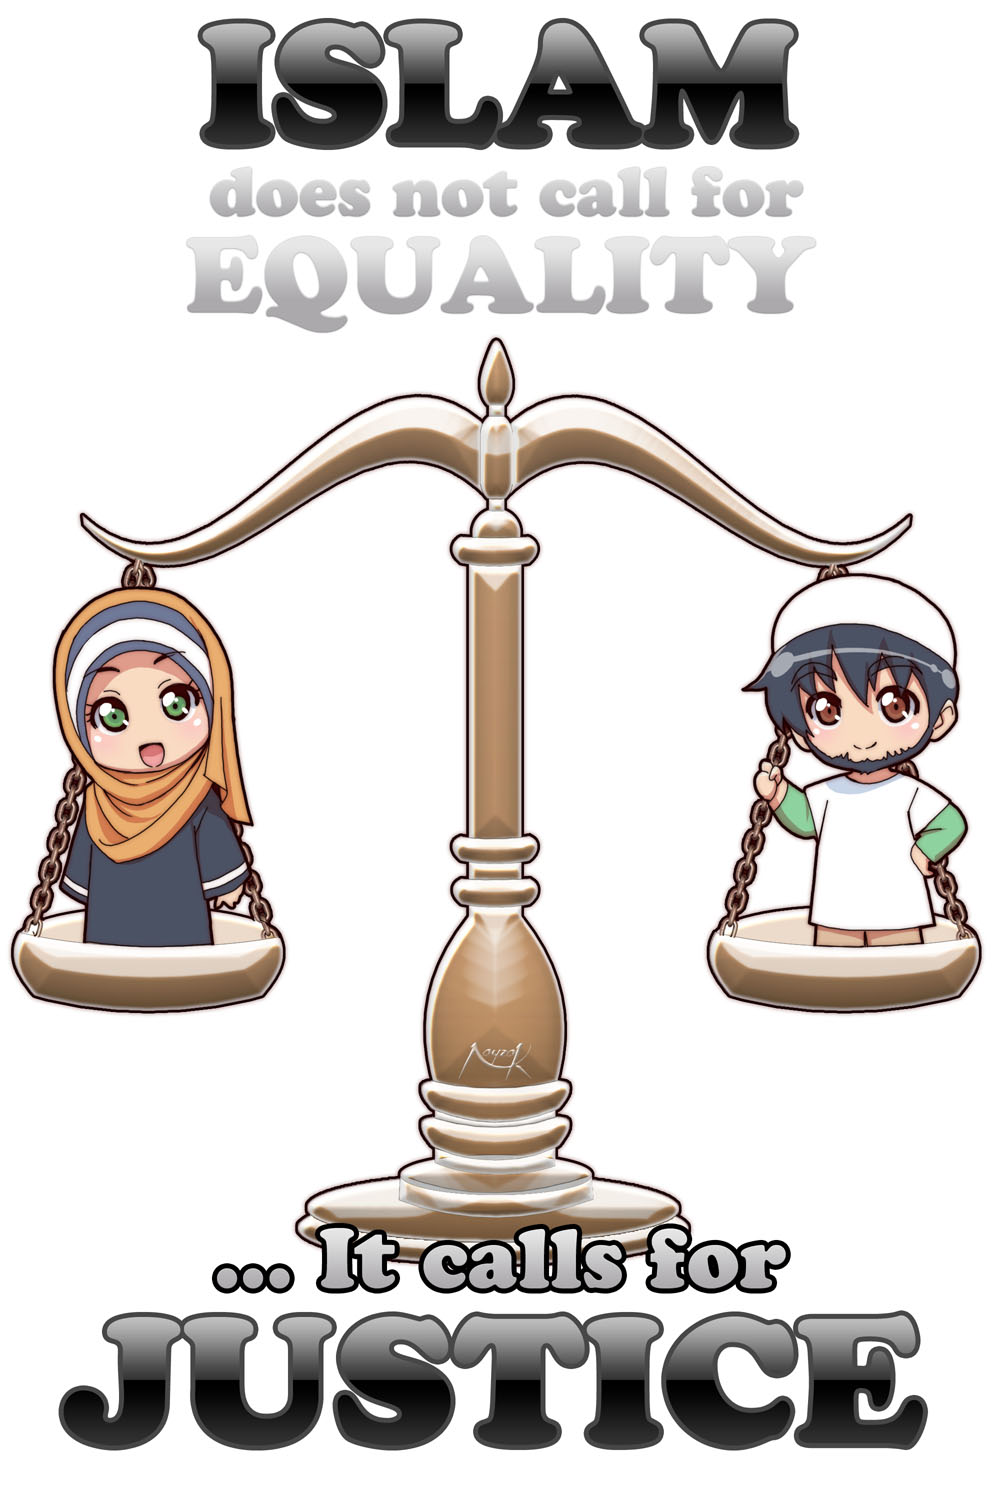 anime islam